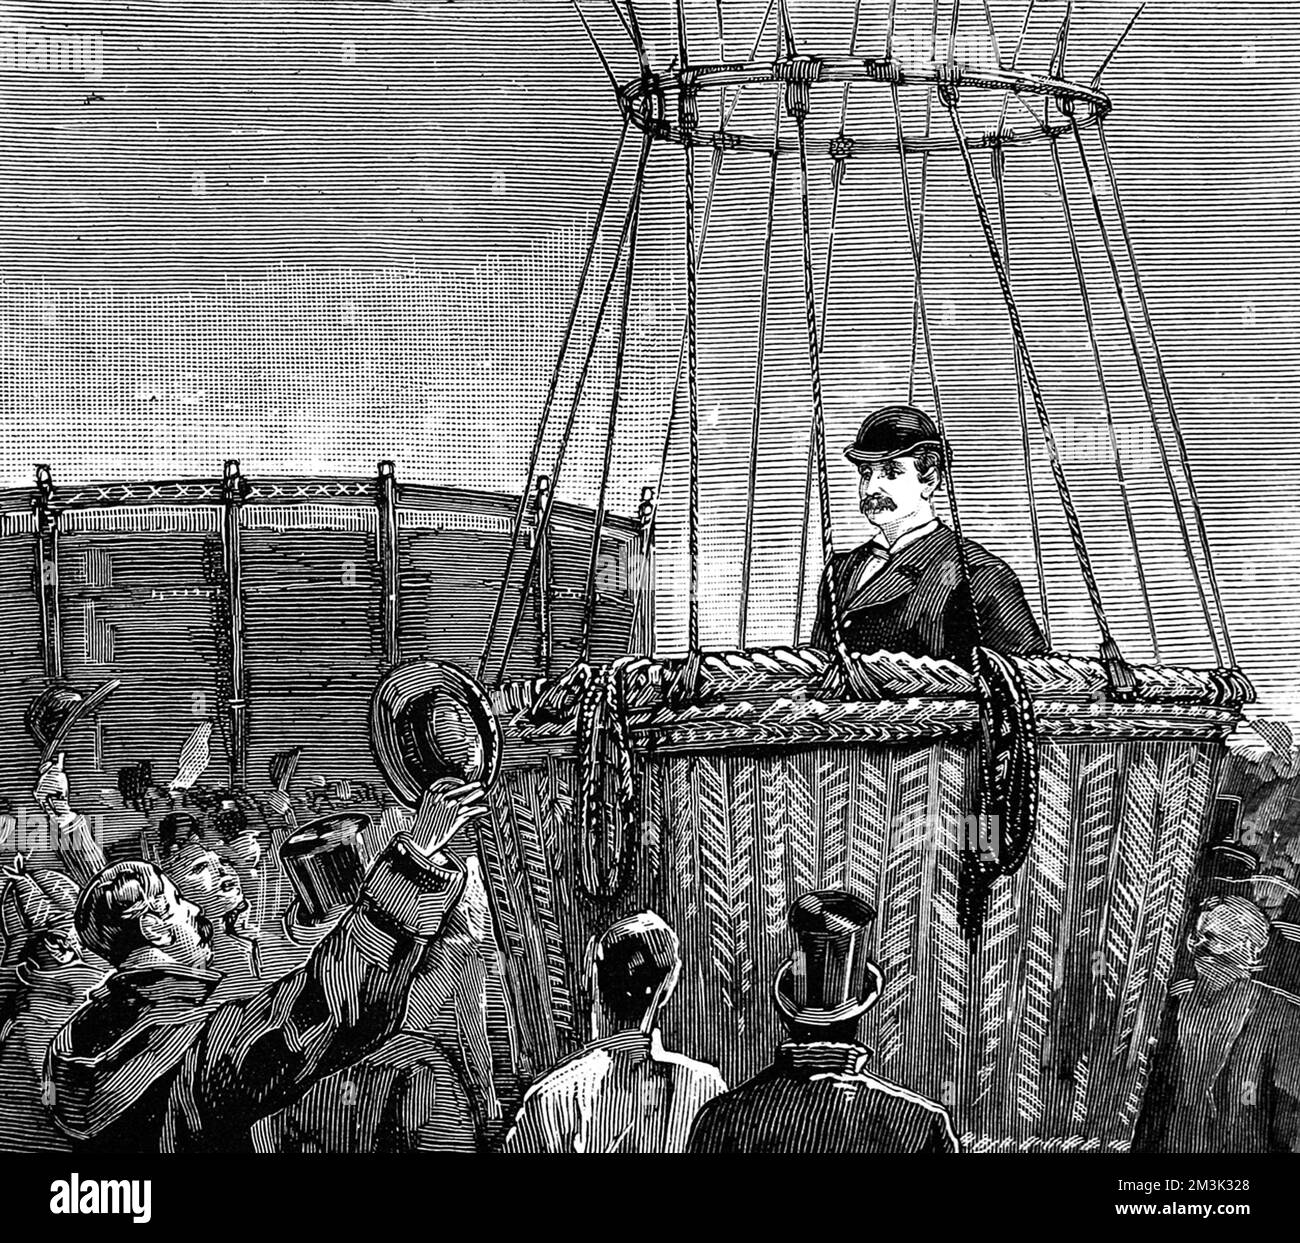 Colonel Frederick Burnaby (1842 - 1885), soldat et explorateur anglais, dans son ballon à air chaud juste avant sa traversée de la Manche en 1882. Ce faisant, il est devenu le premier ballon à traverser la Manche seule. Date : 31 janvier 1885 Banque D'Images